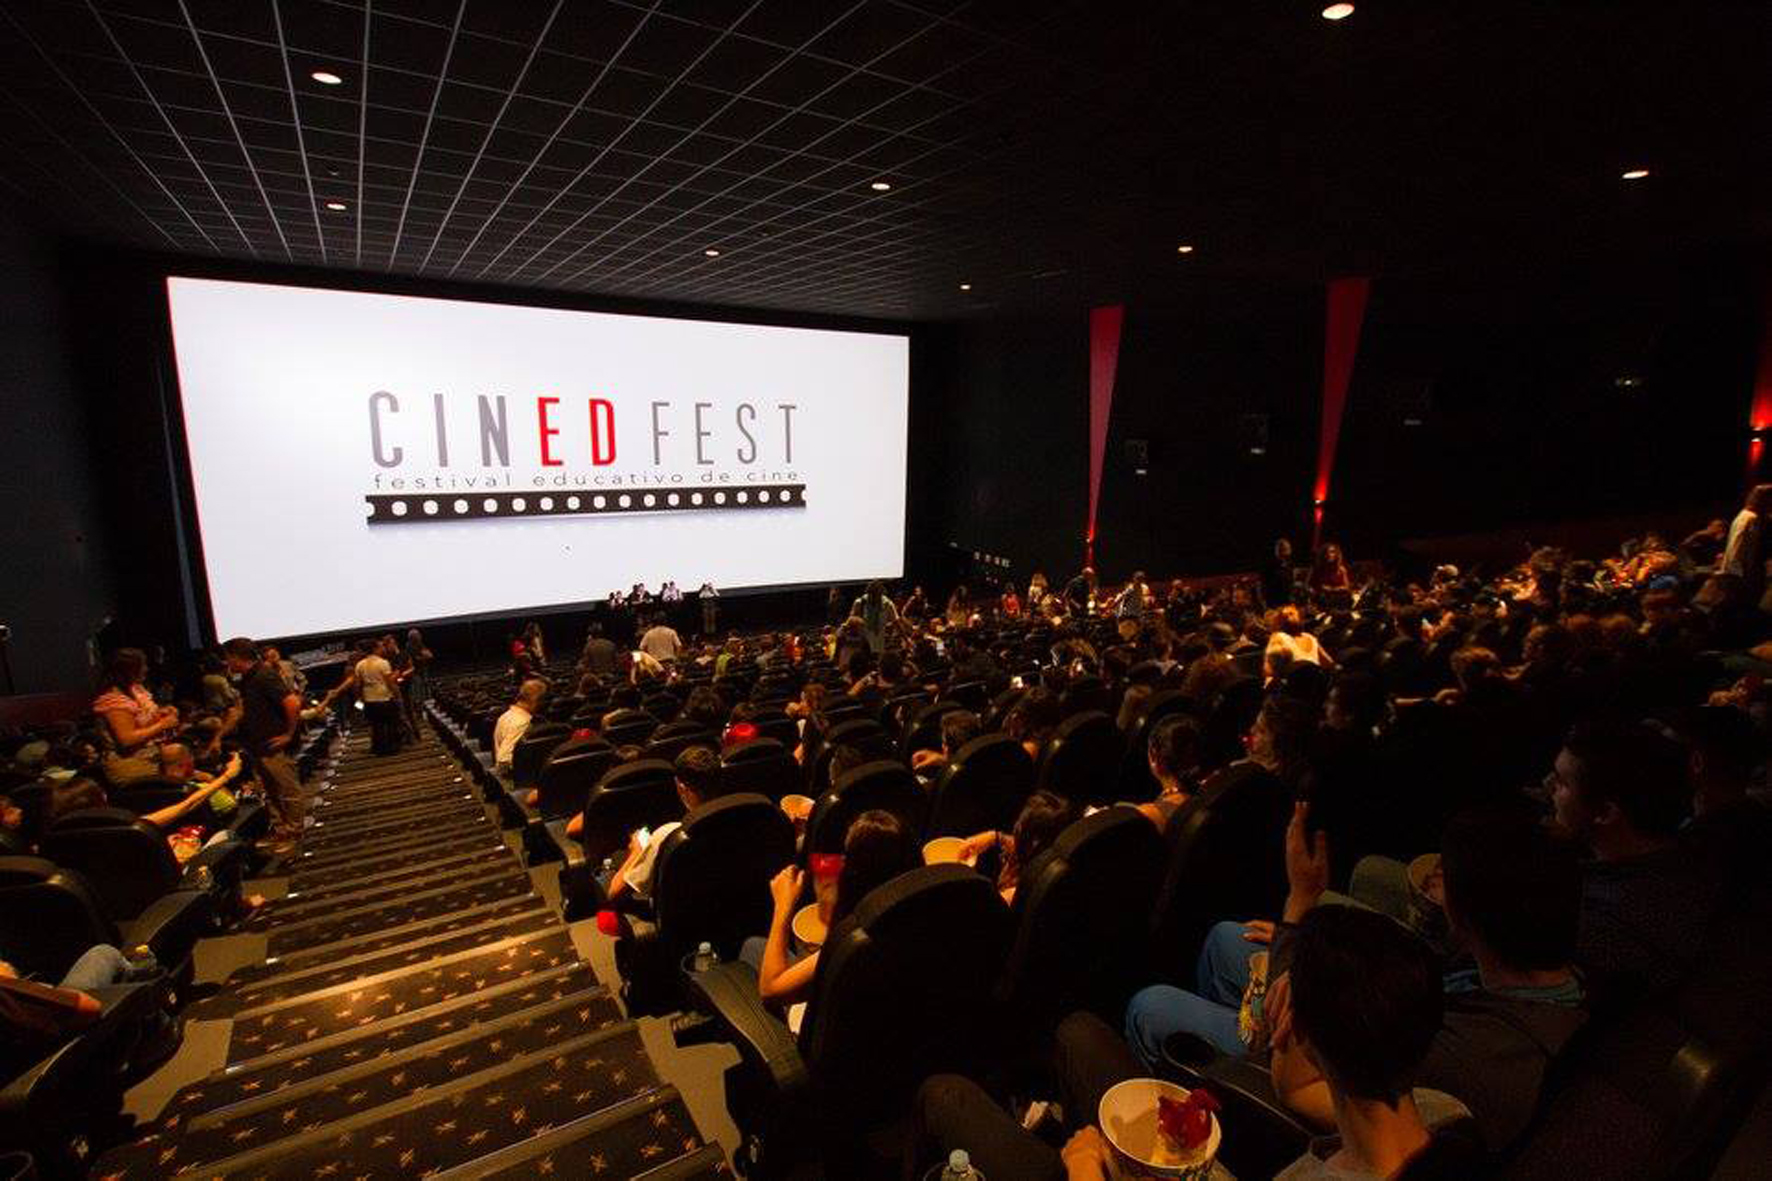 Dos centros educativos de El Hierro participarán en Cinedfest 4